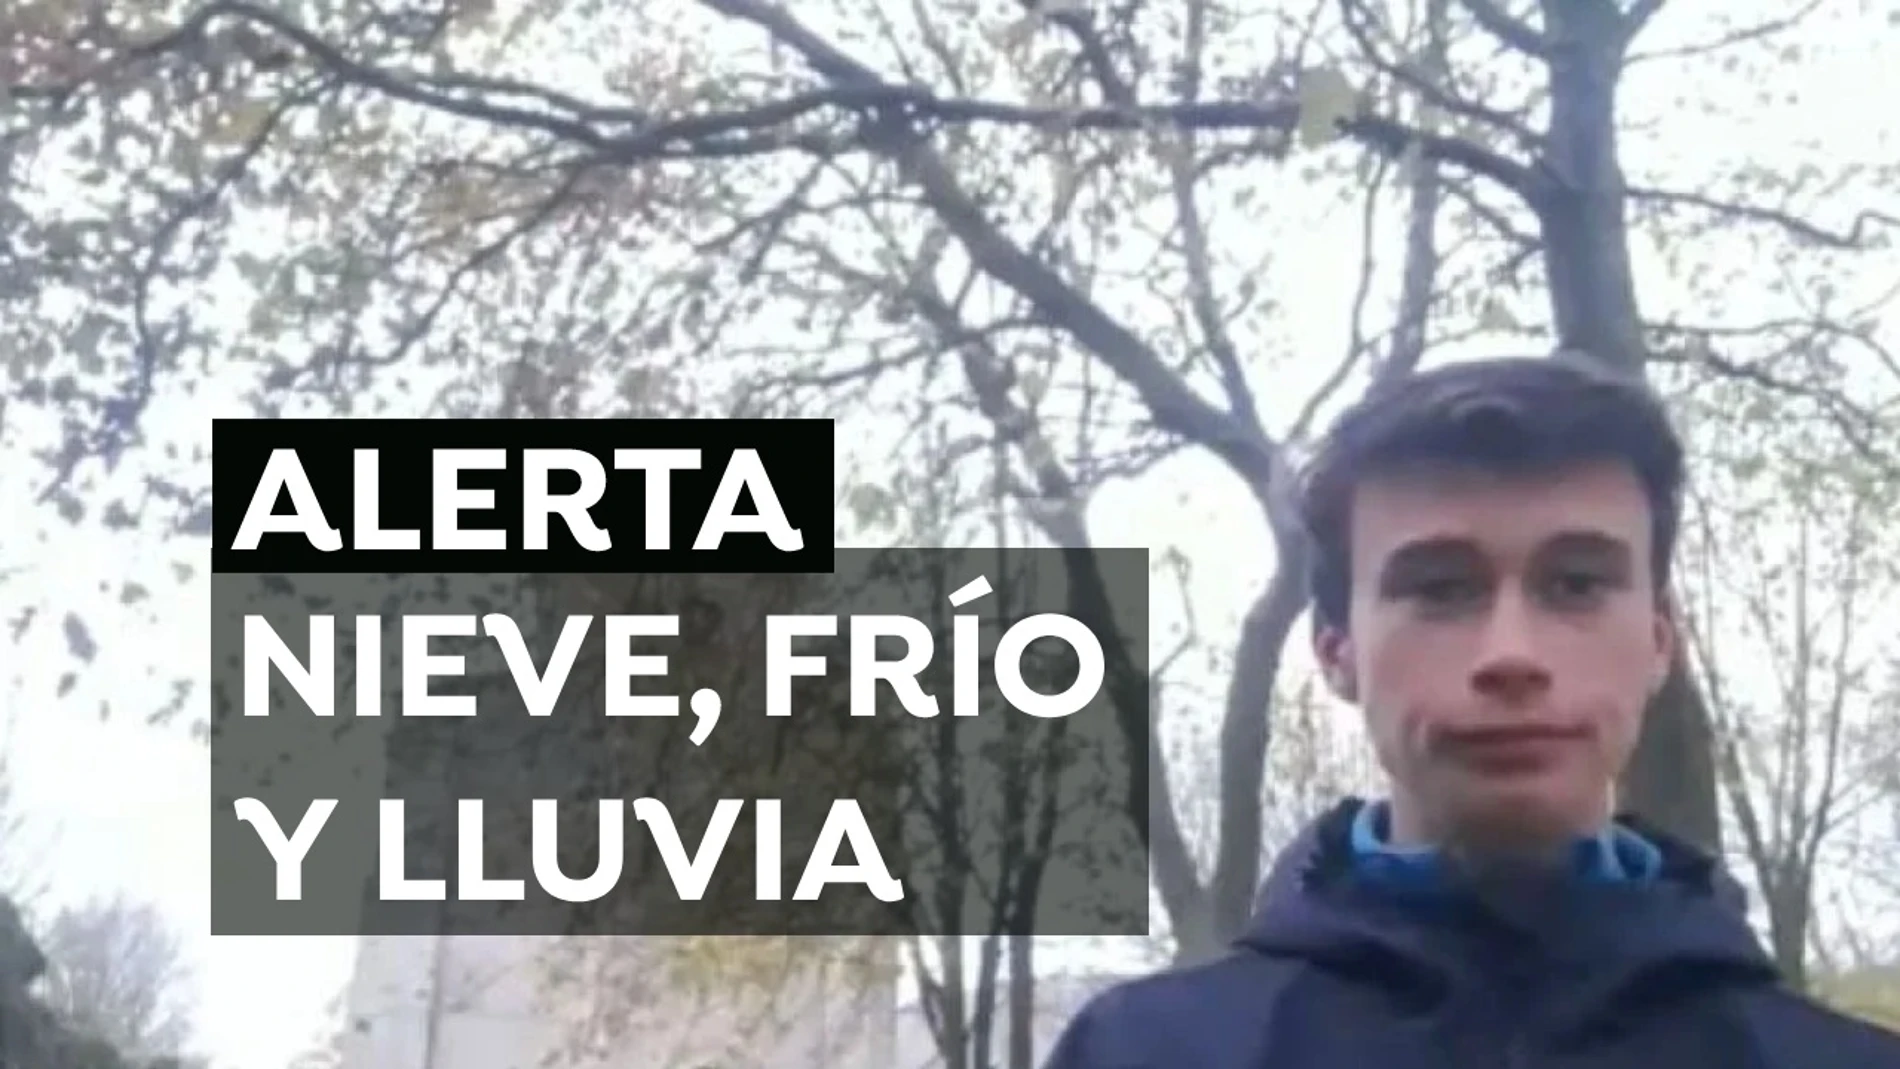 Alerta por nieve: Jorge Rey, el joven que pronosticó Filomena nos cuenta dónde nevará los próximos días